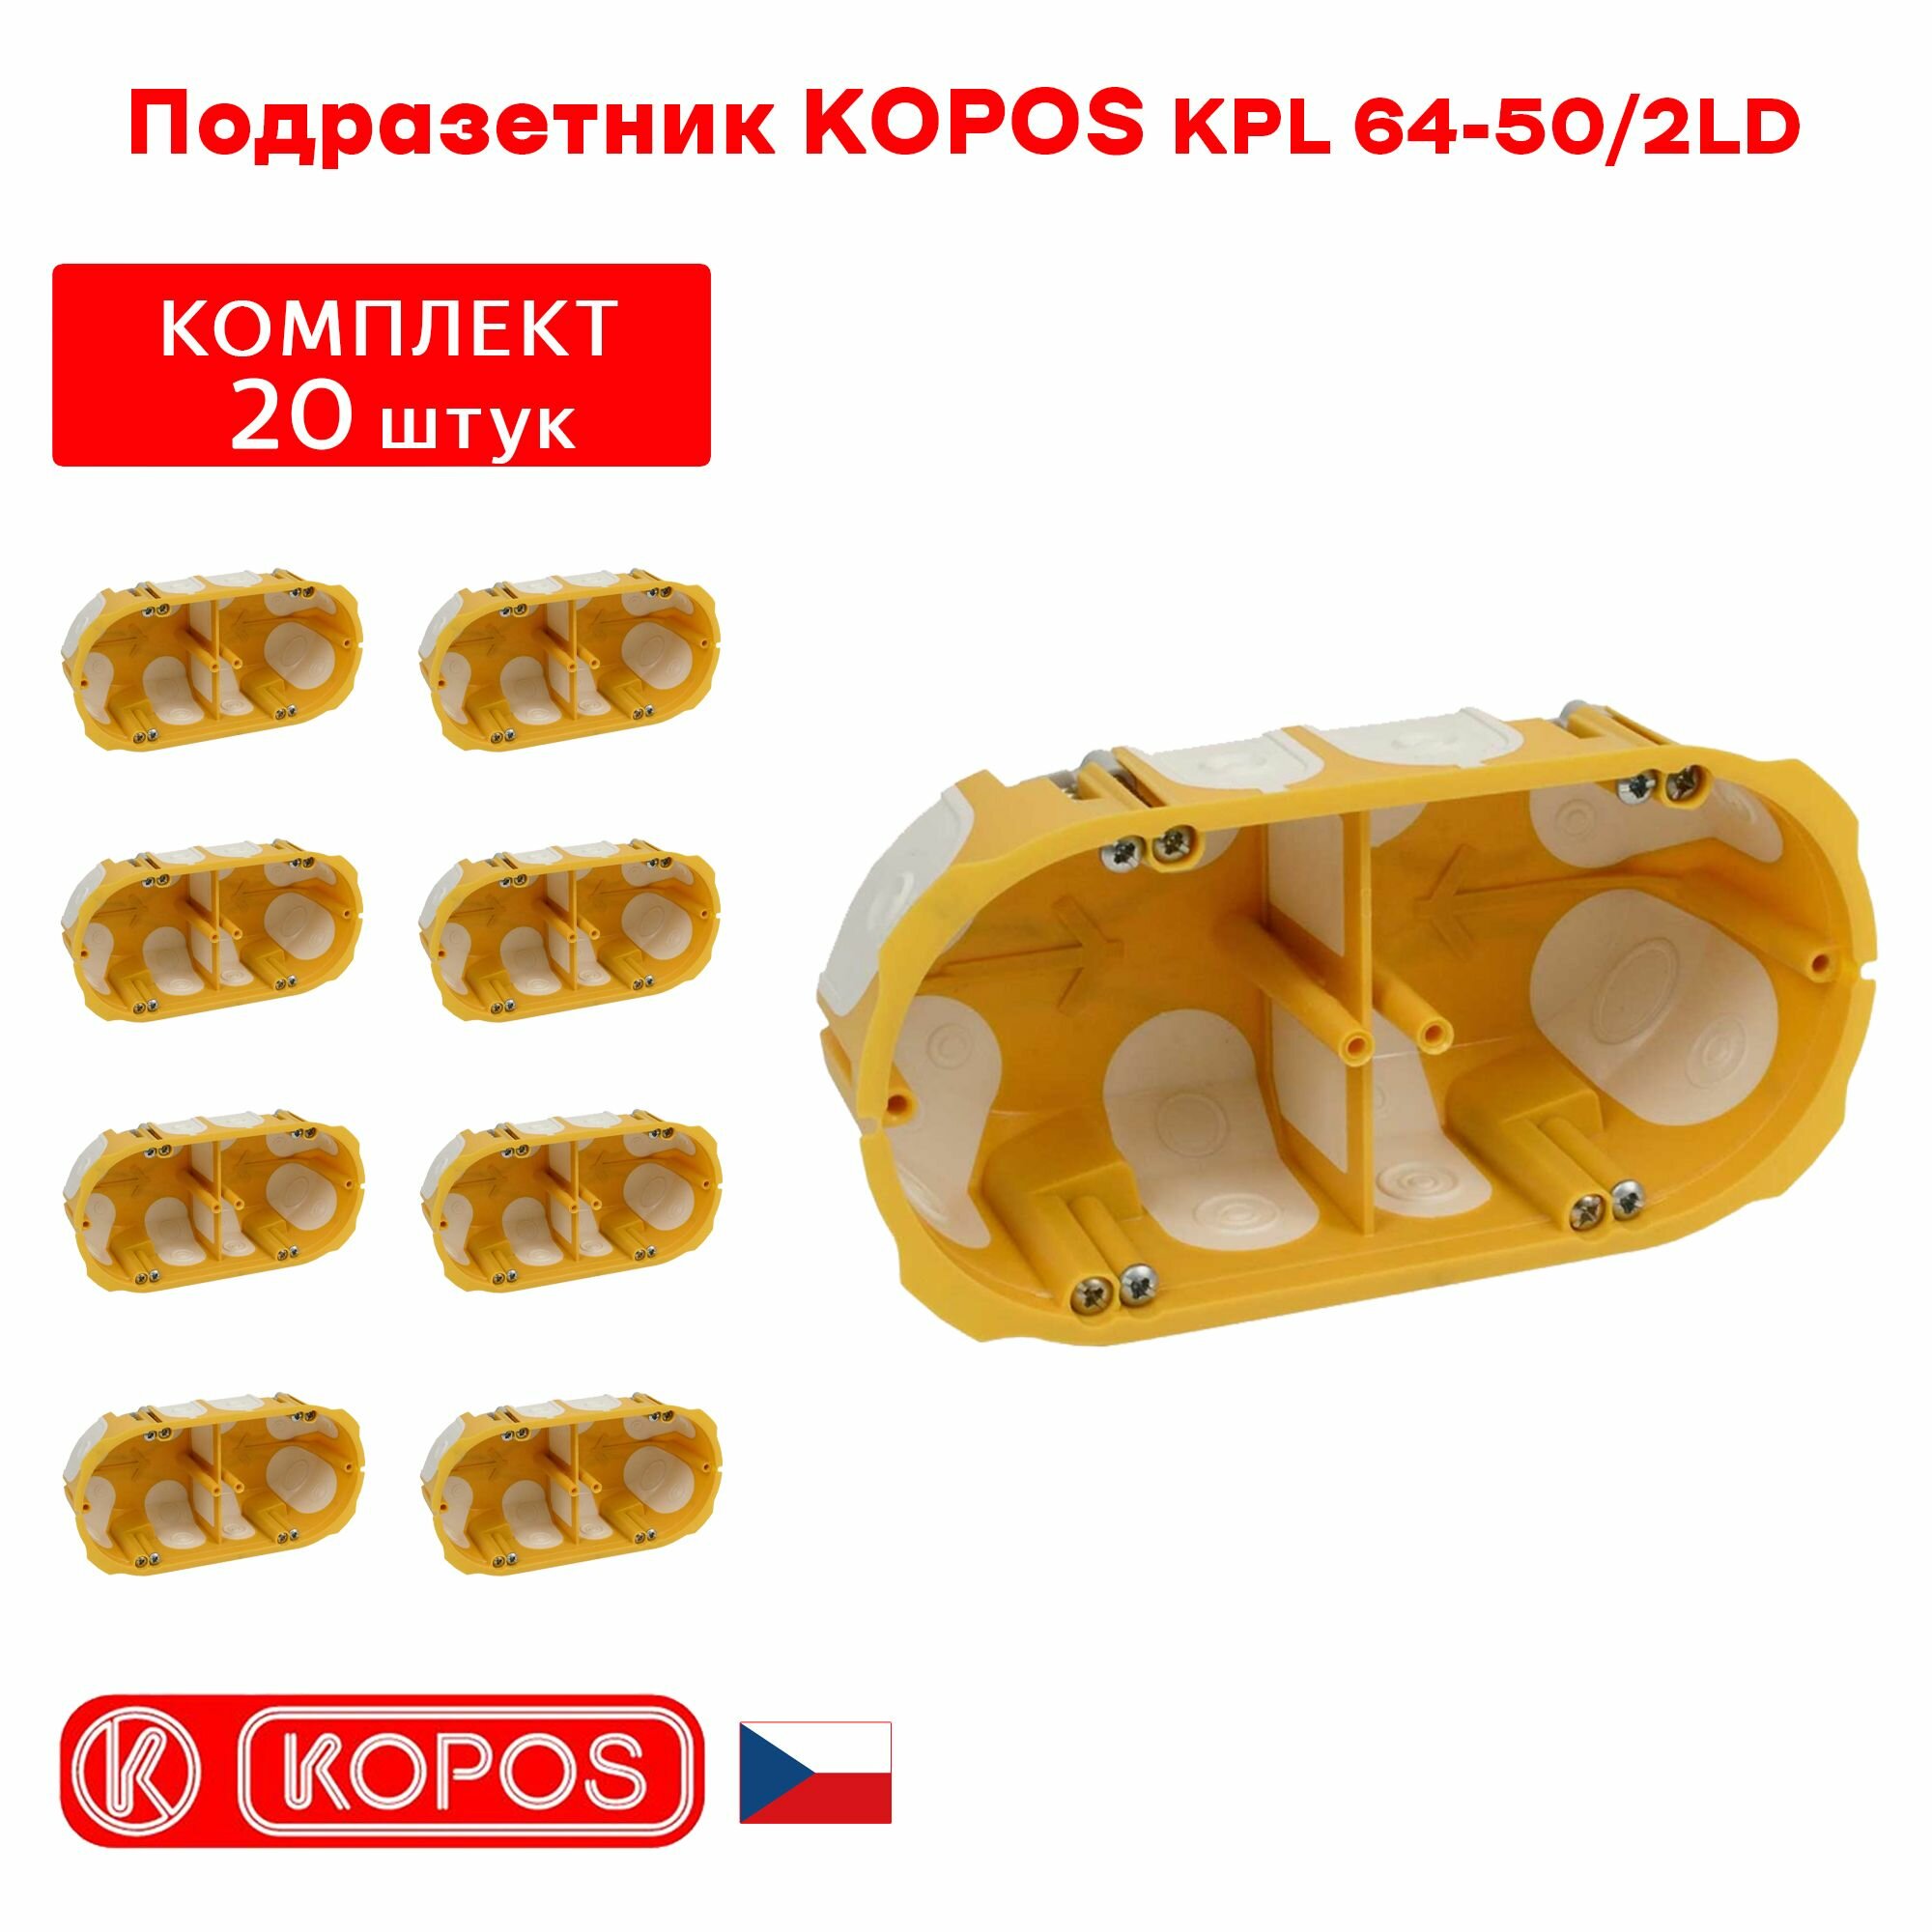 Подрозетник двухместный KOPOS KPL 64-50/2LD герметичный для пустотелых, гипсокартонных и деревянных стен комплект: 20штук